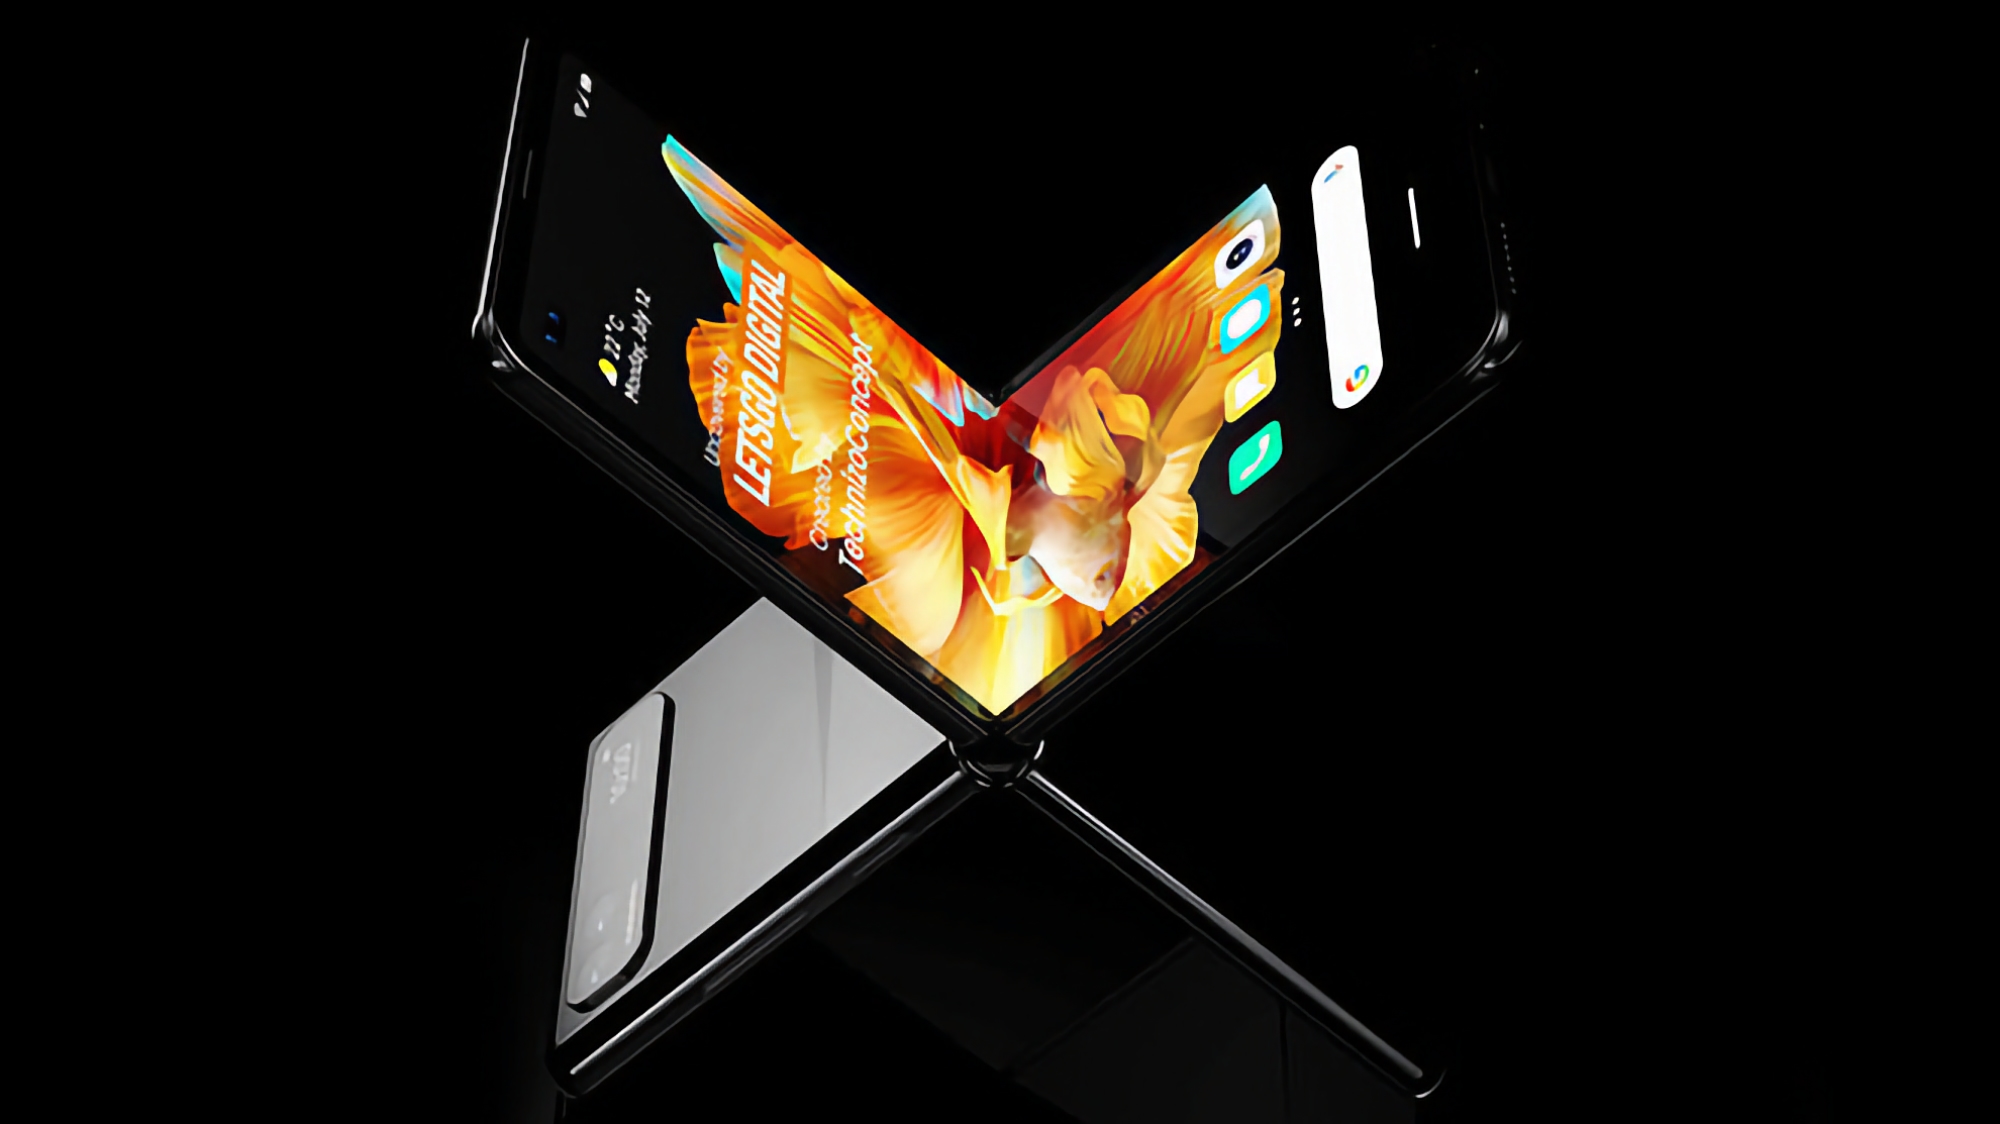 Plotka: Xiaomi Mix Flip otrzyma baterię o pojemności 4700 mAh i obsługę szybkiego ładowania 67 W